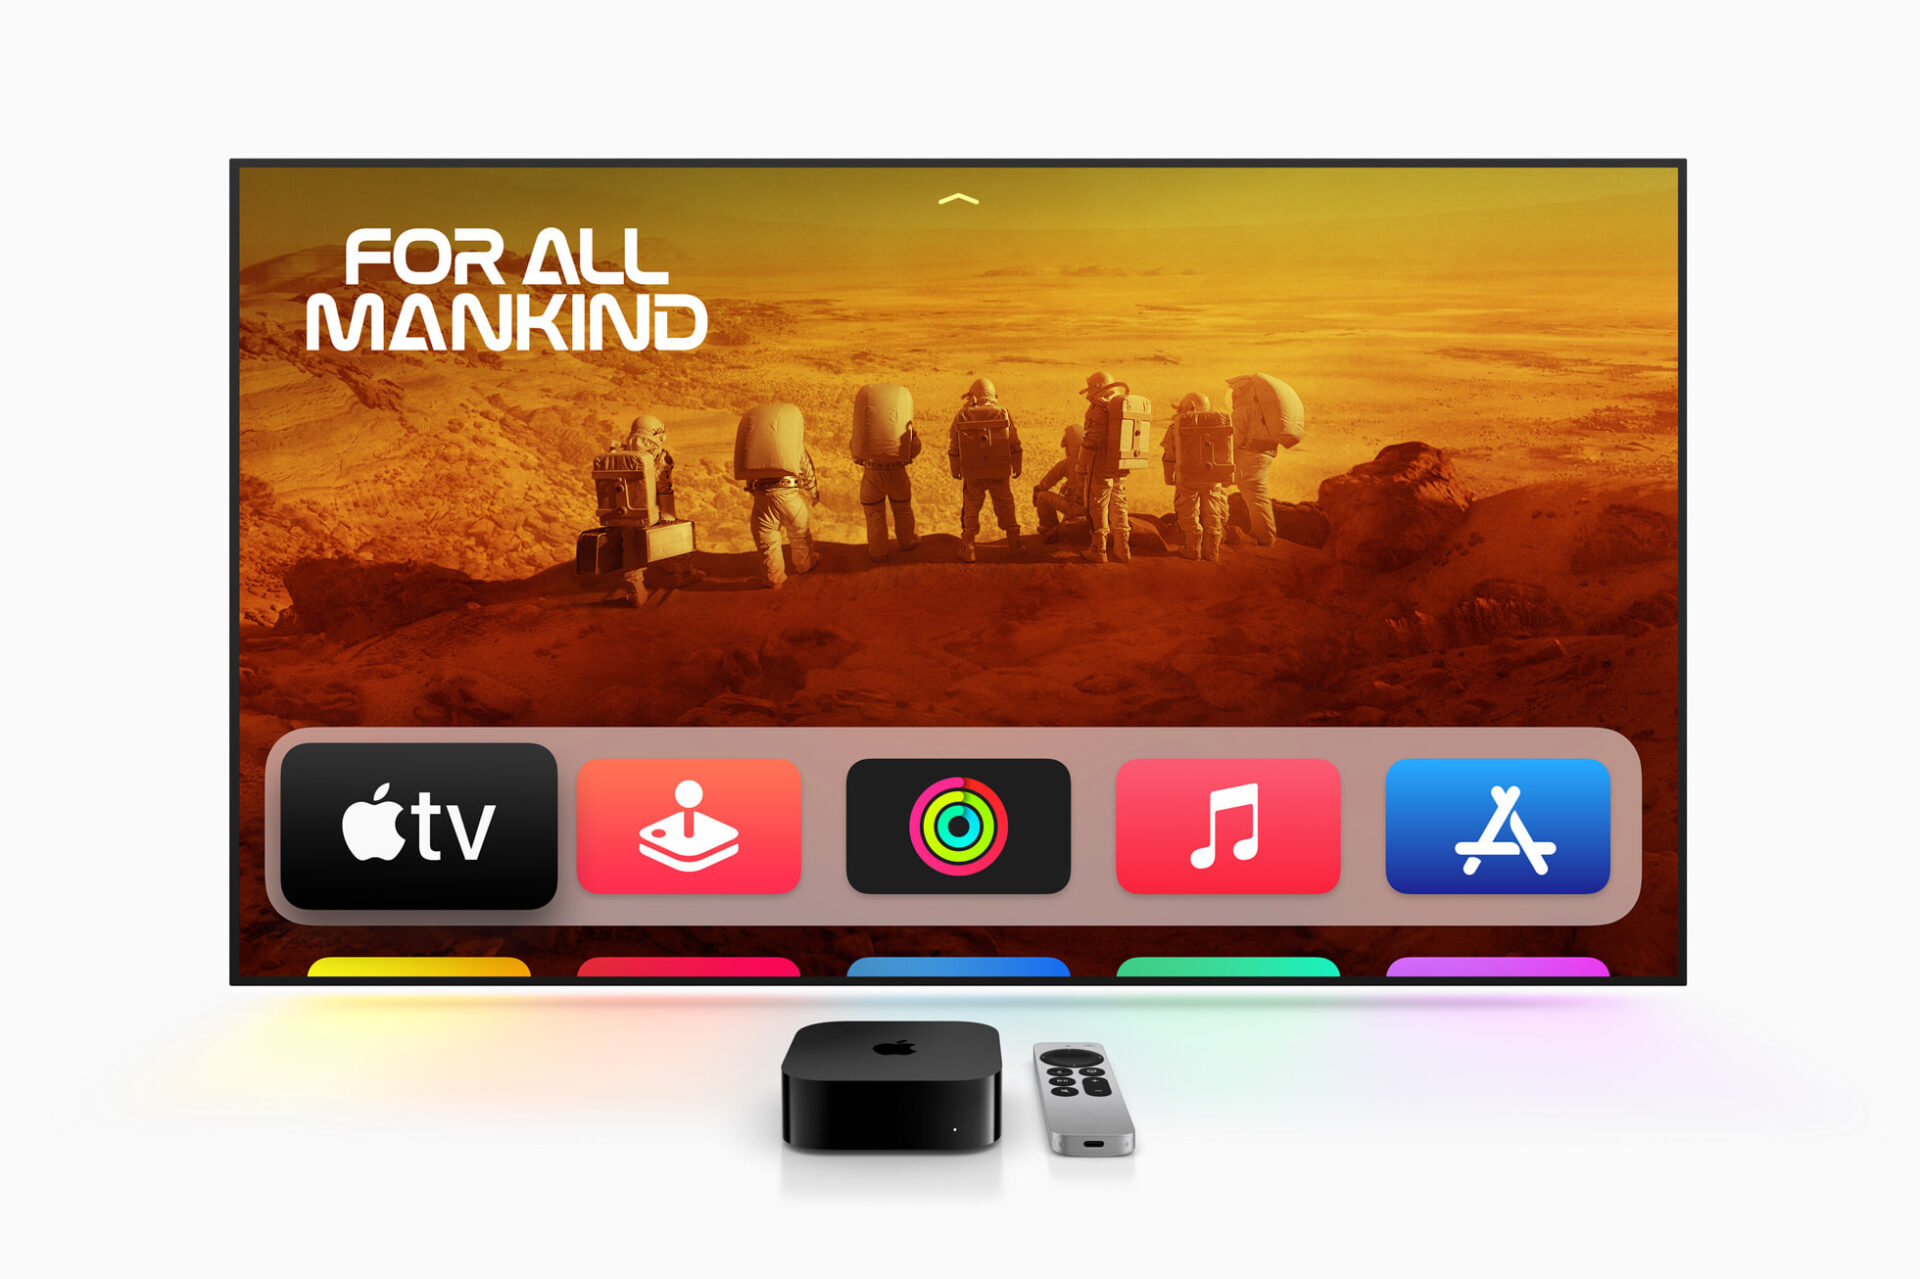 เปิดตัว Apple TV 4K รุ่นใหม่ เล็ก เบา ทรงพลังกว่าเดิม